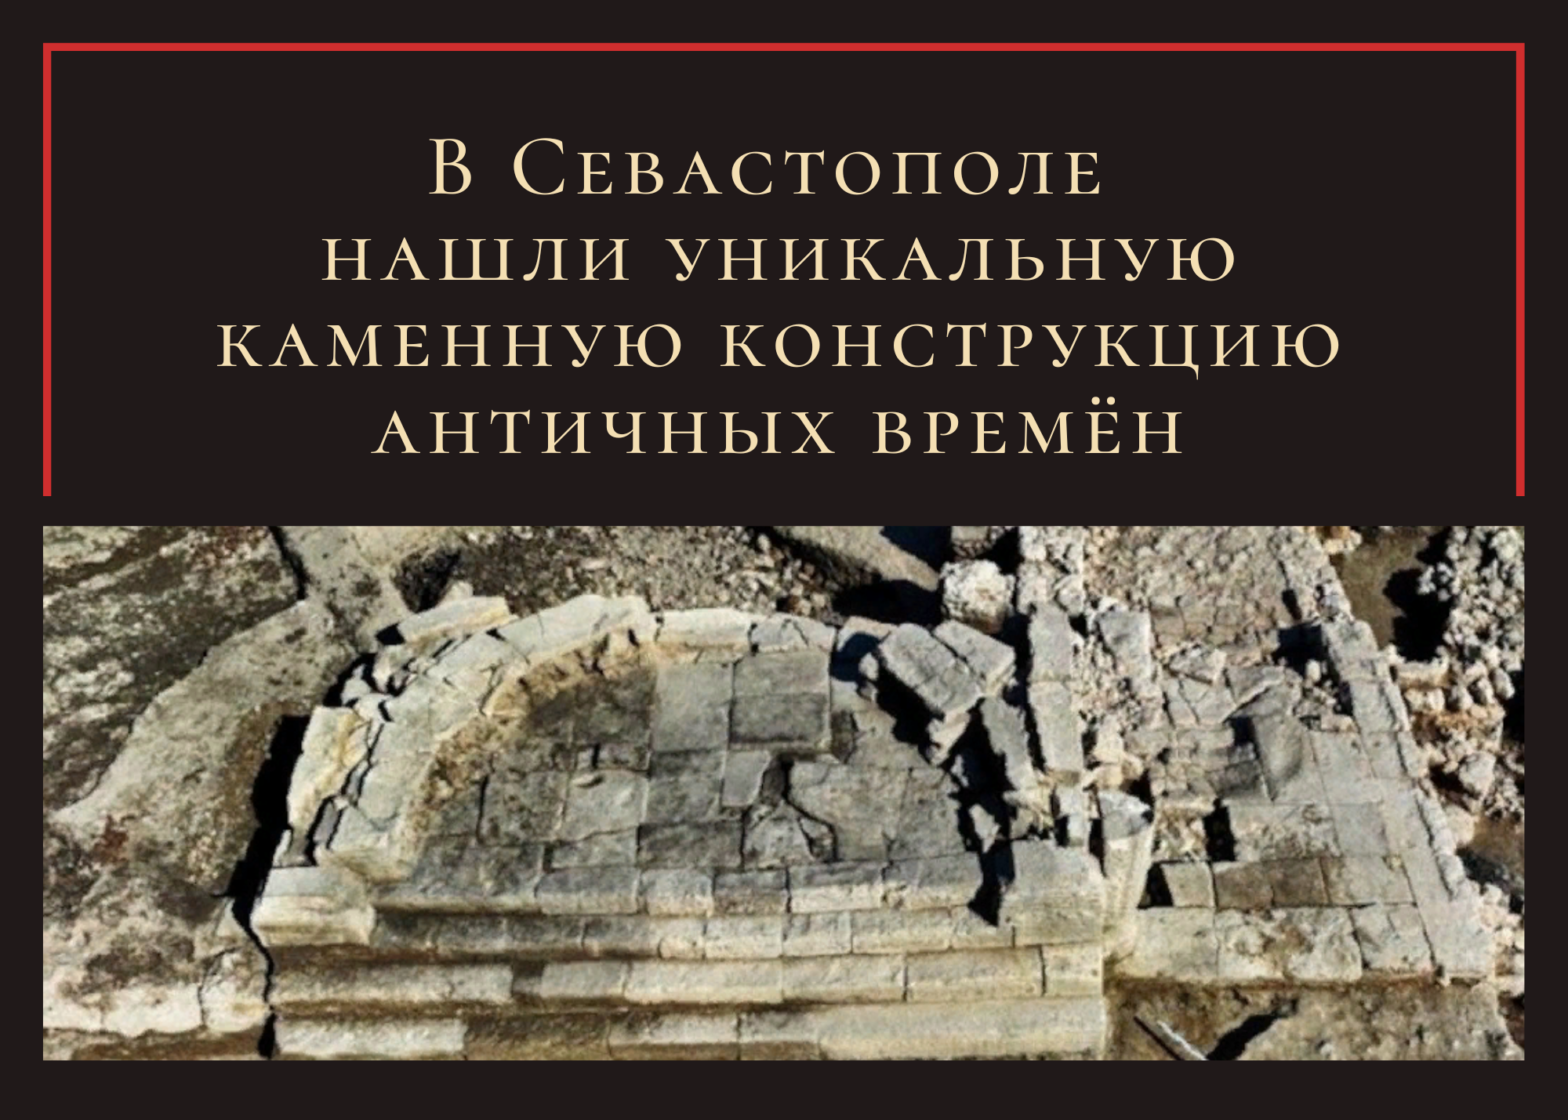 В Севастополе нашли уникальную каменную конструкцию античных времён